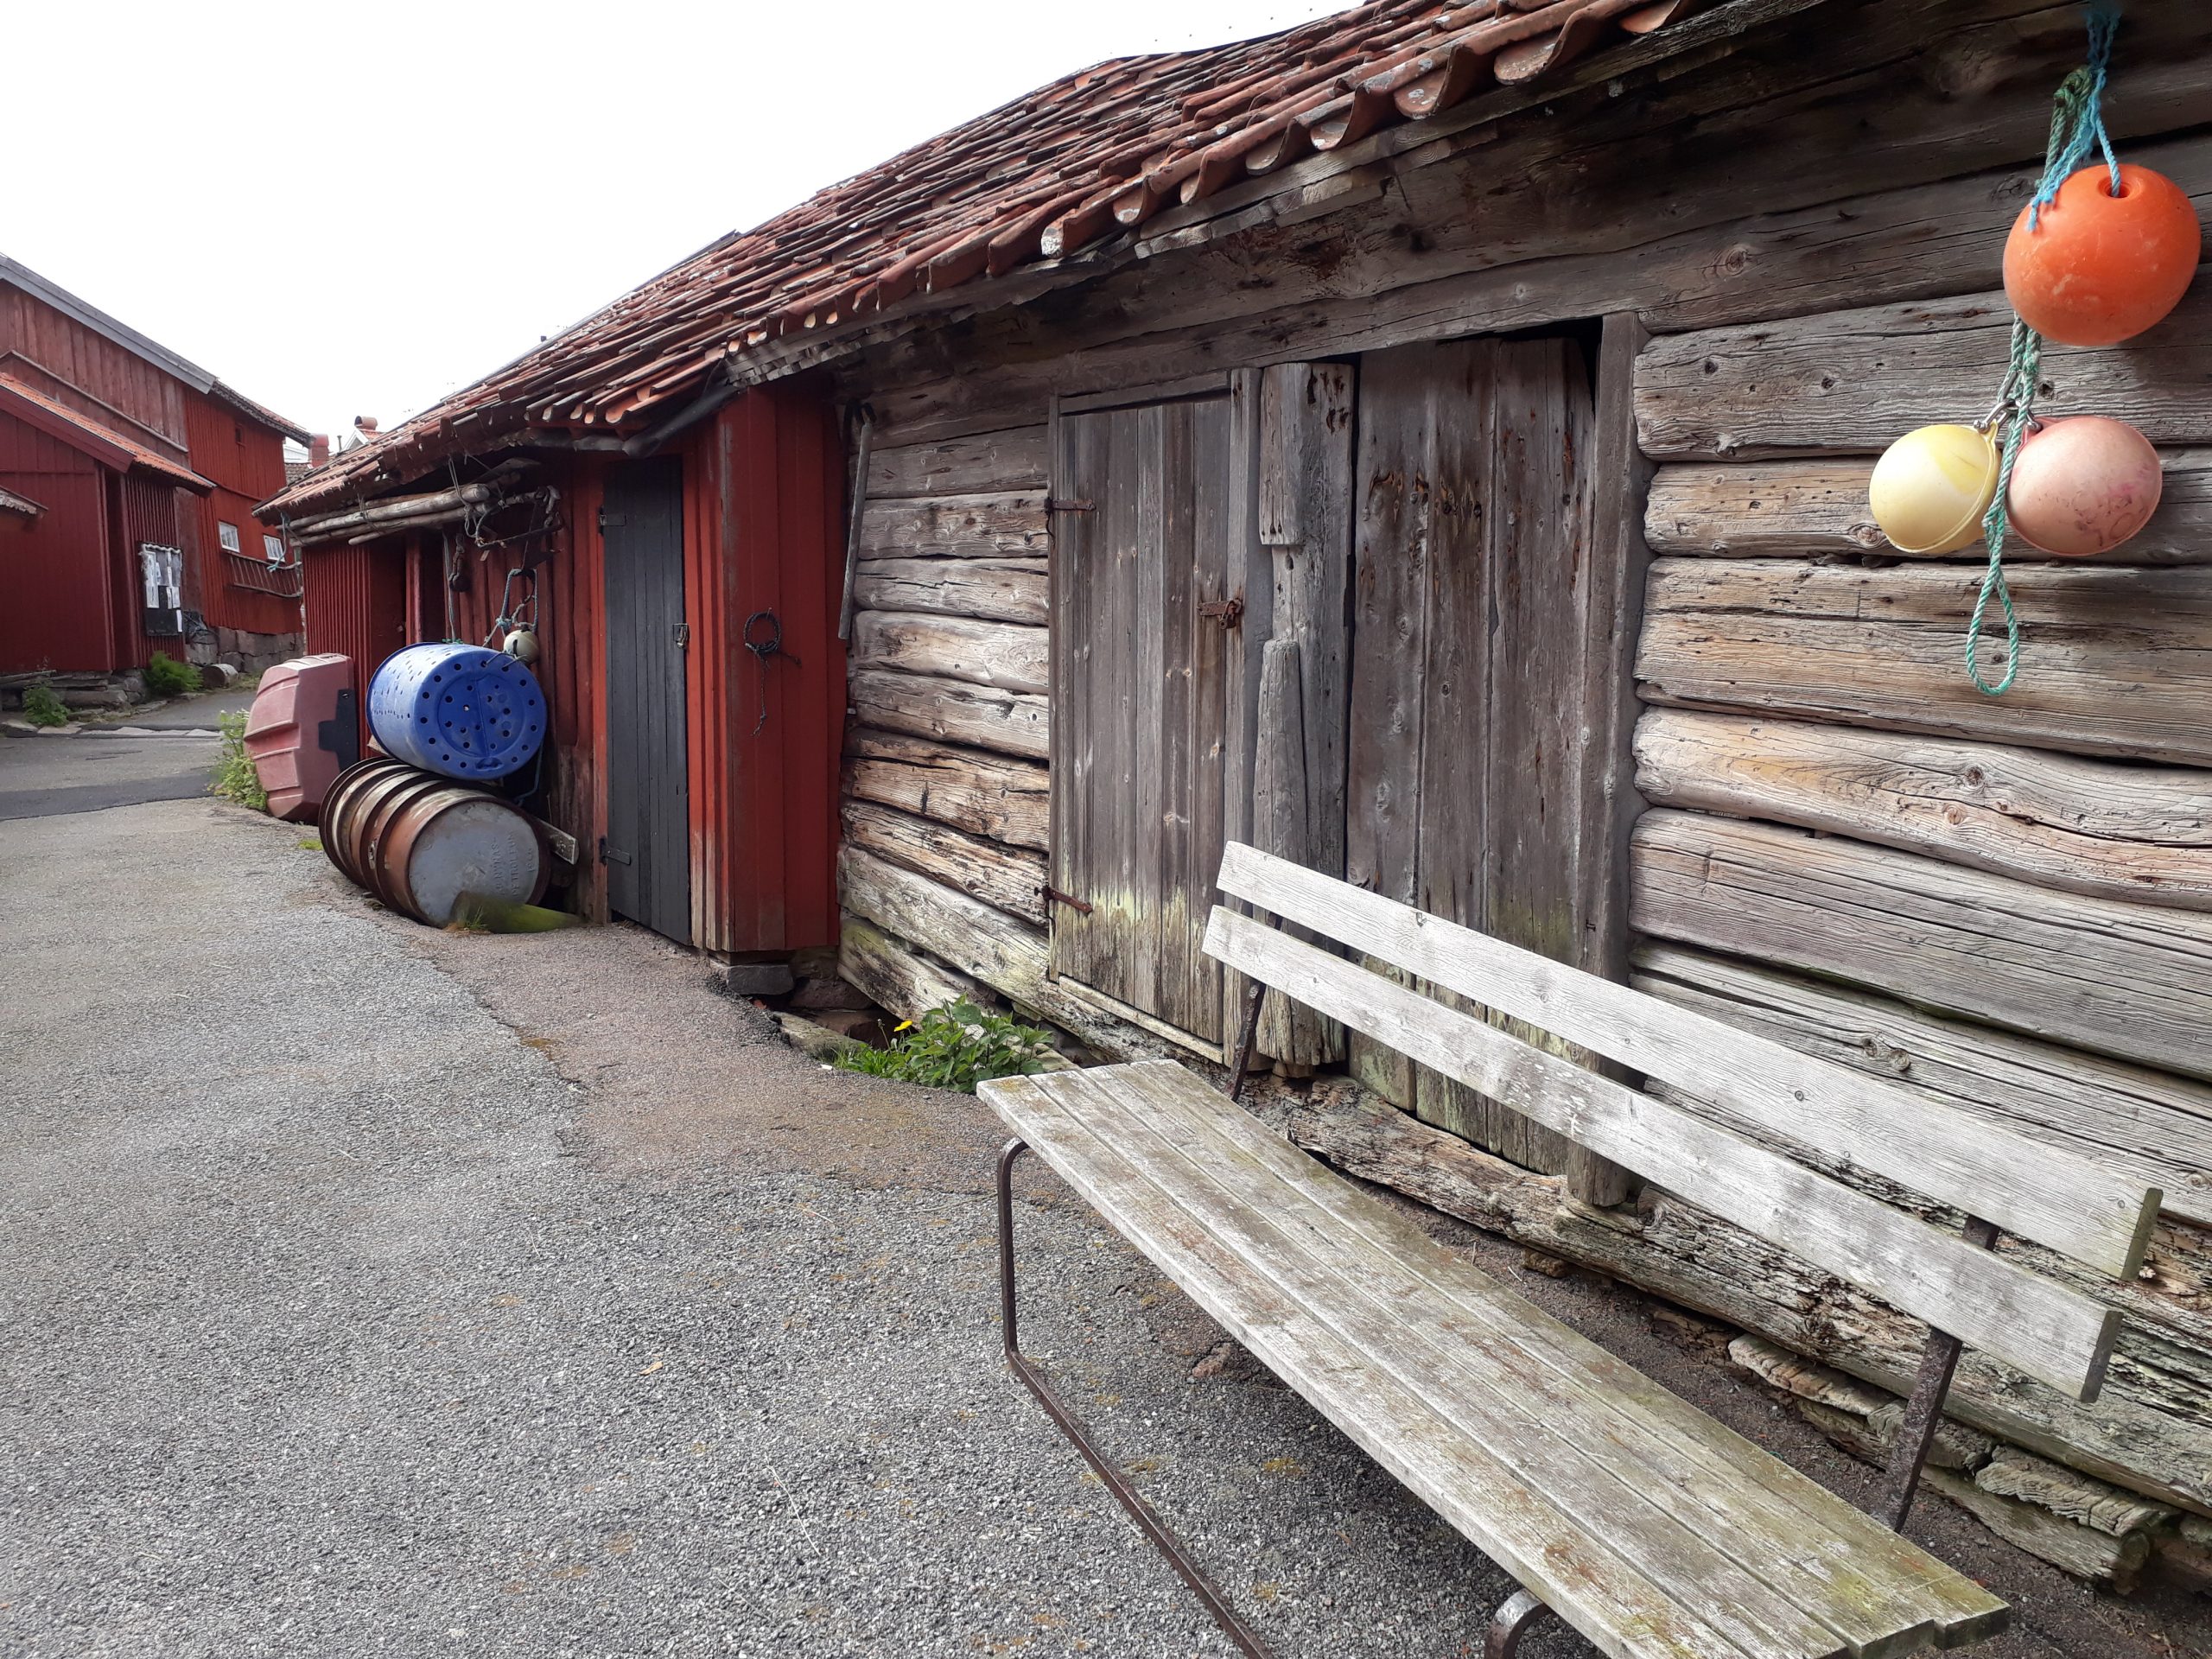 En grå sliten träbänk står framför en gammal omålad sjöbod. bakom den står en rödmålad sjöbod. Bodarna står invid en gångväg som leder bortåt.